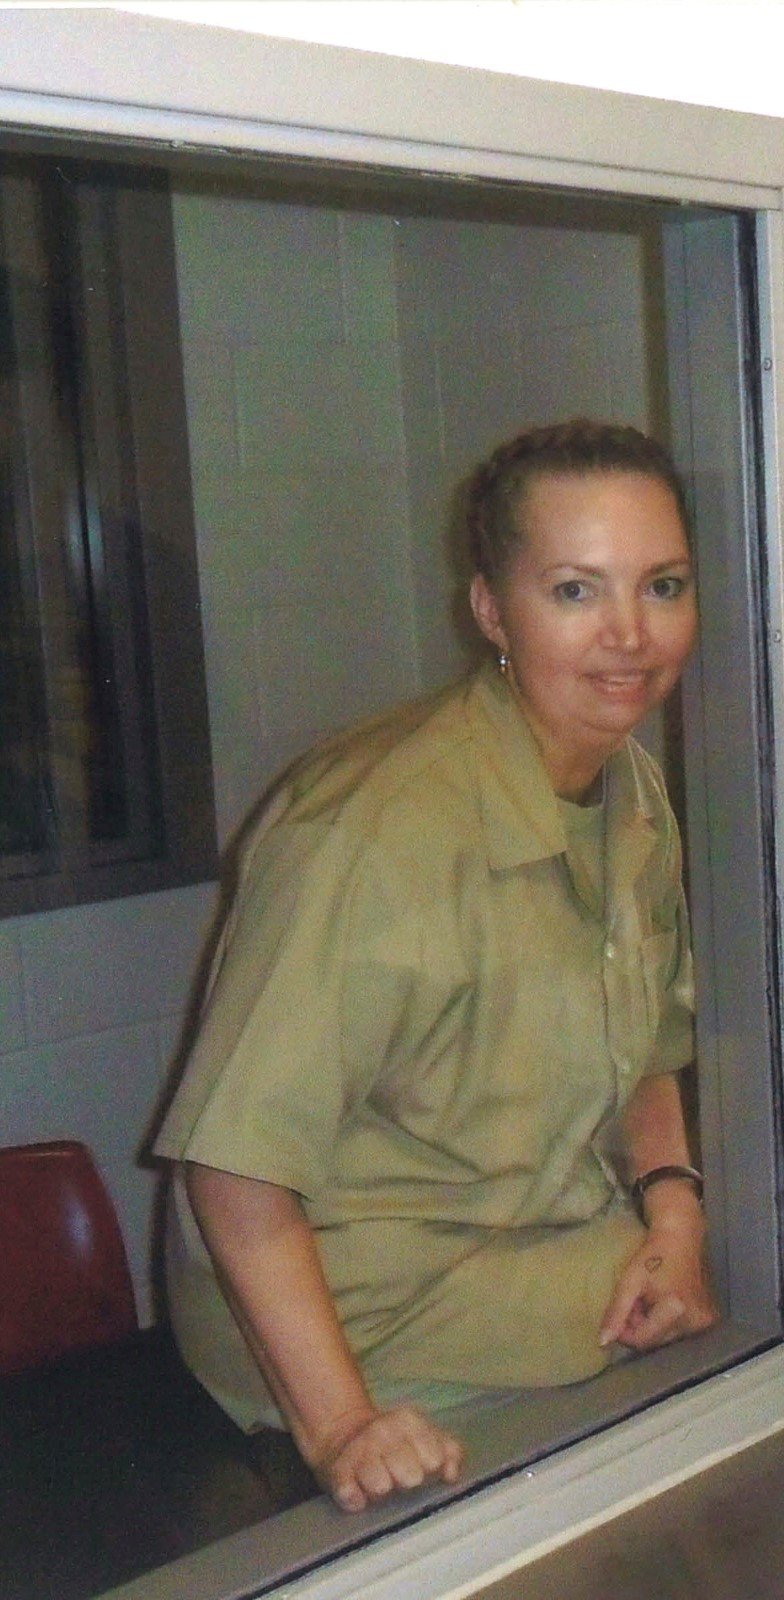 Lisa Montgomeryová dostala federální trest smrti za vraždu těhotné.